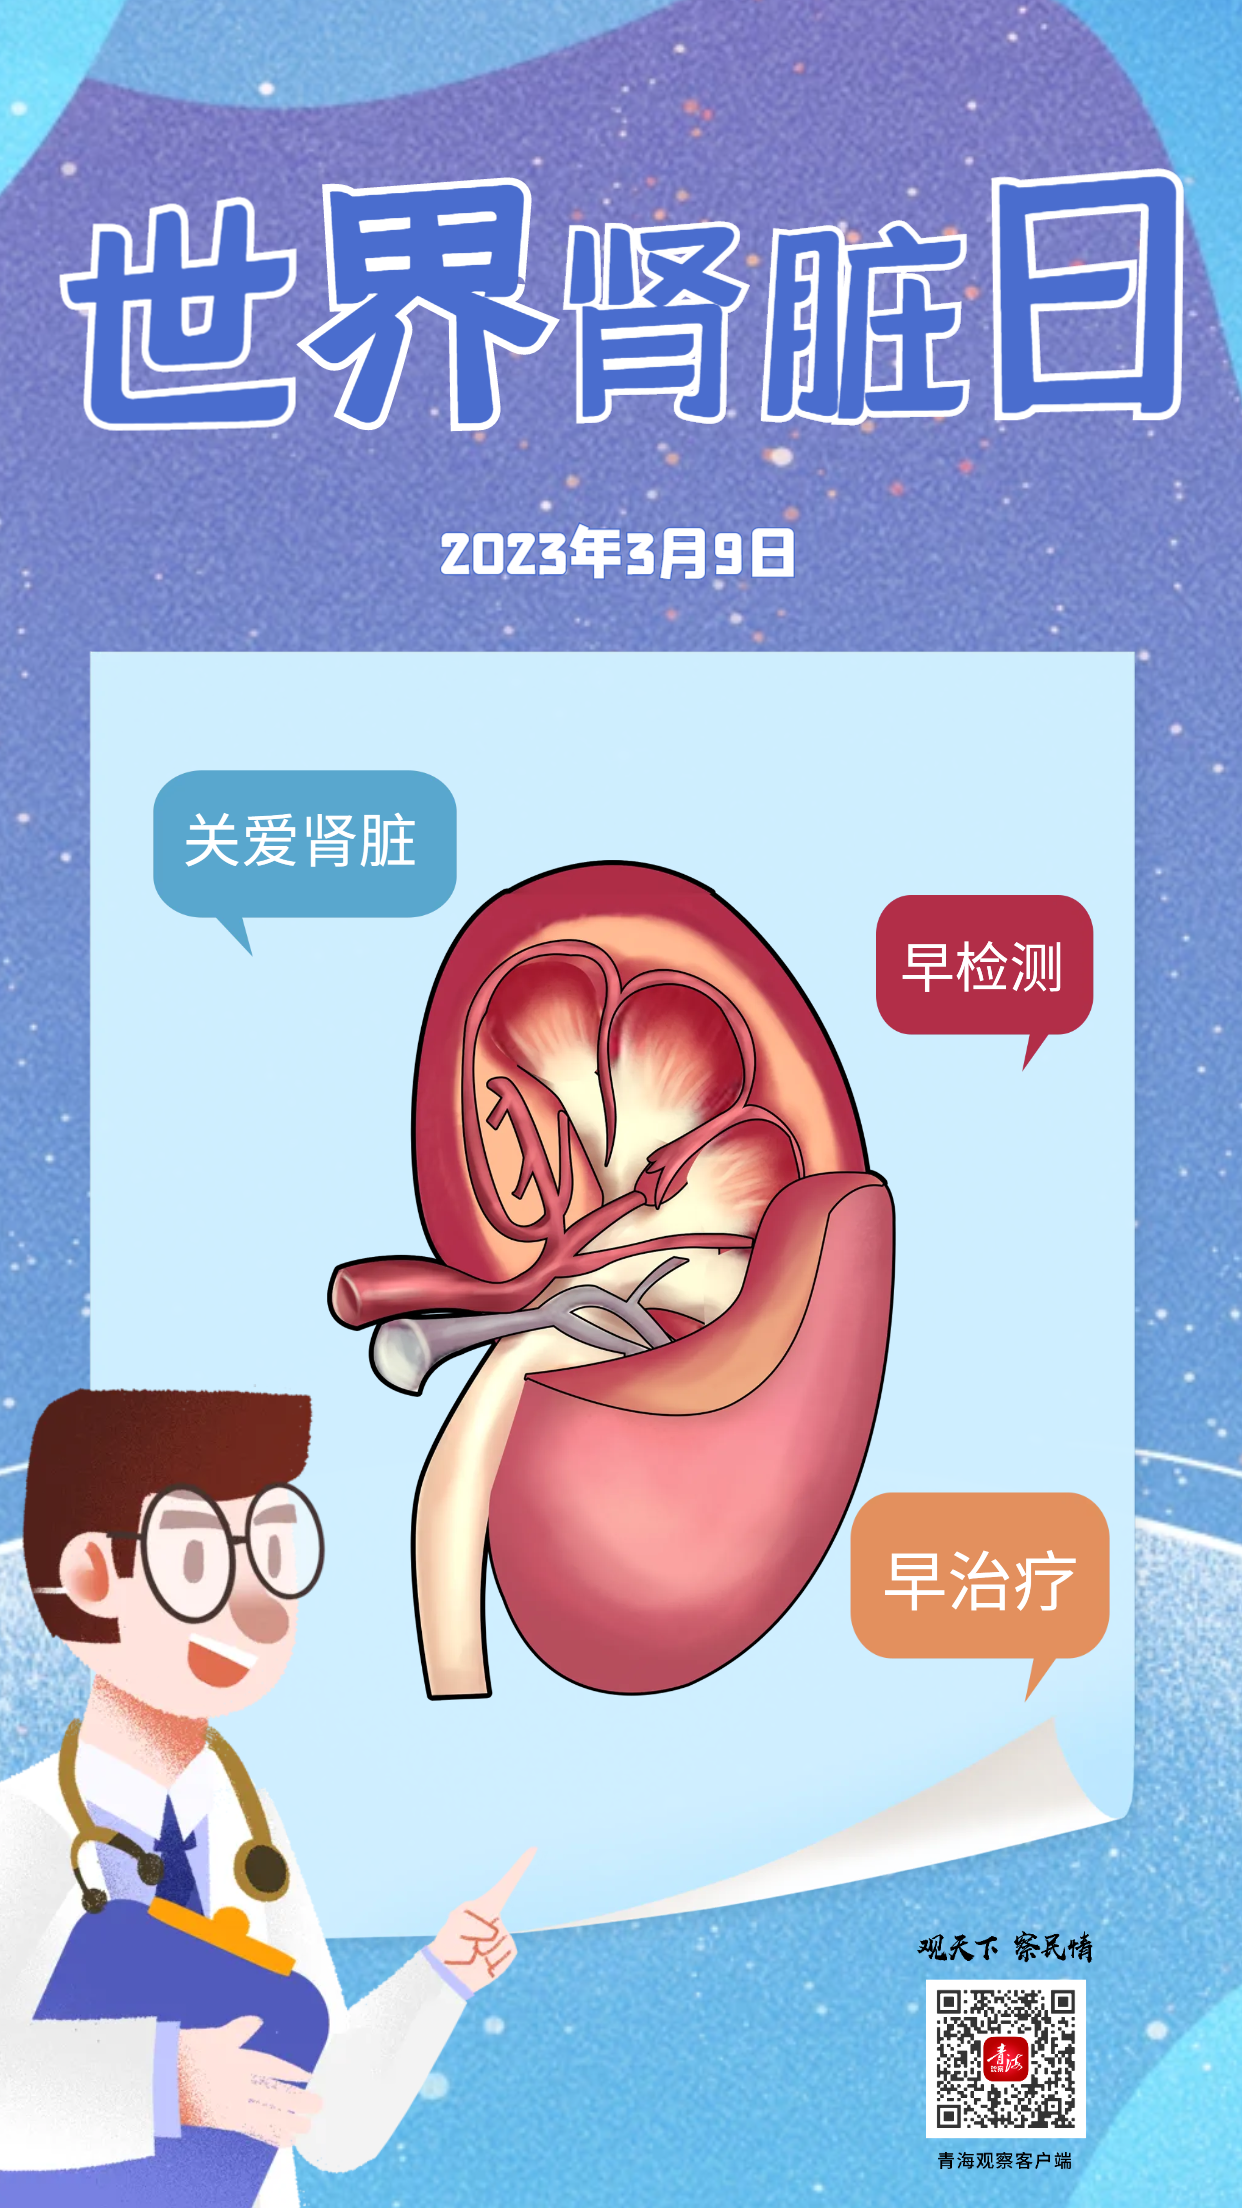 2021世界肾脏日海报图片